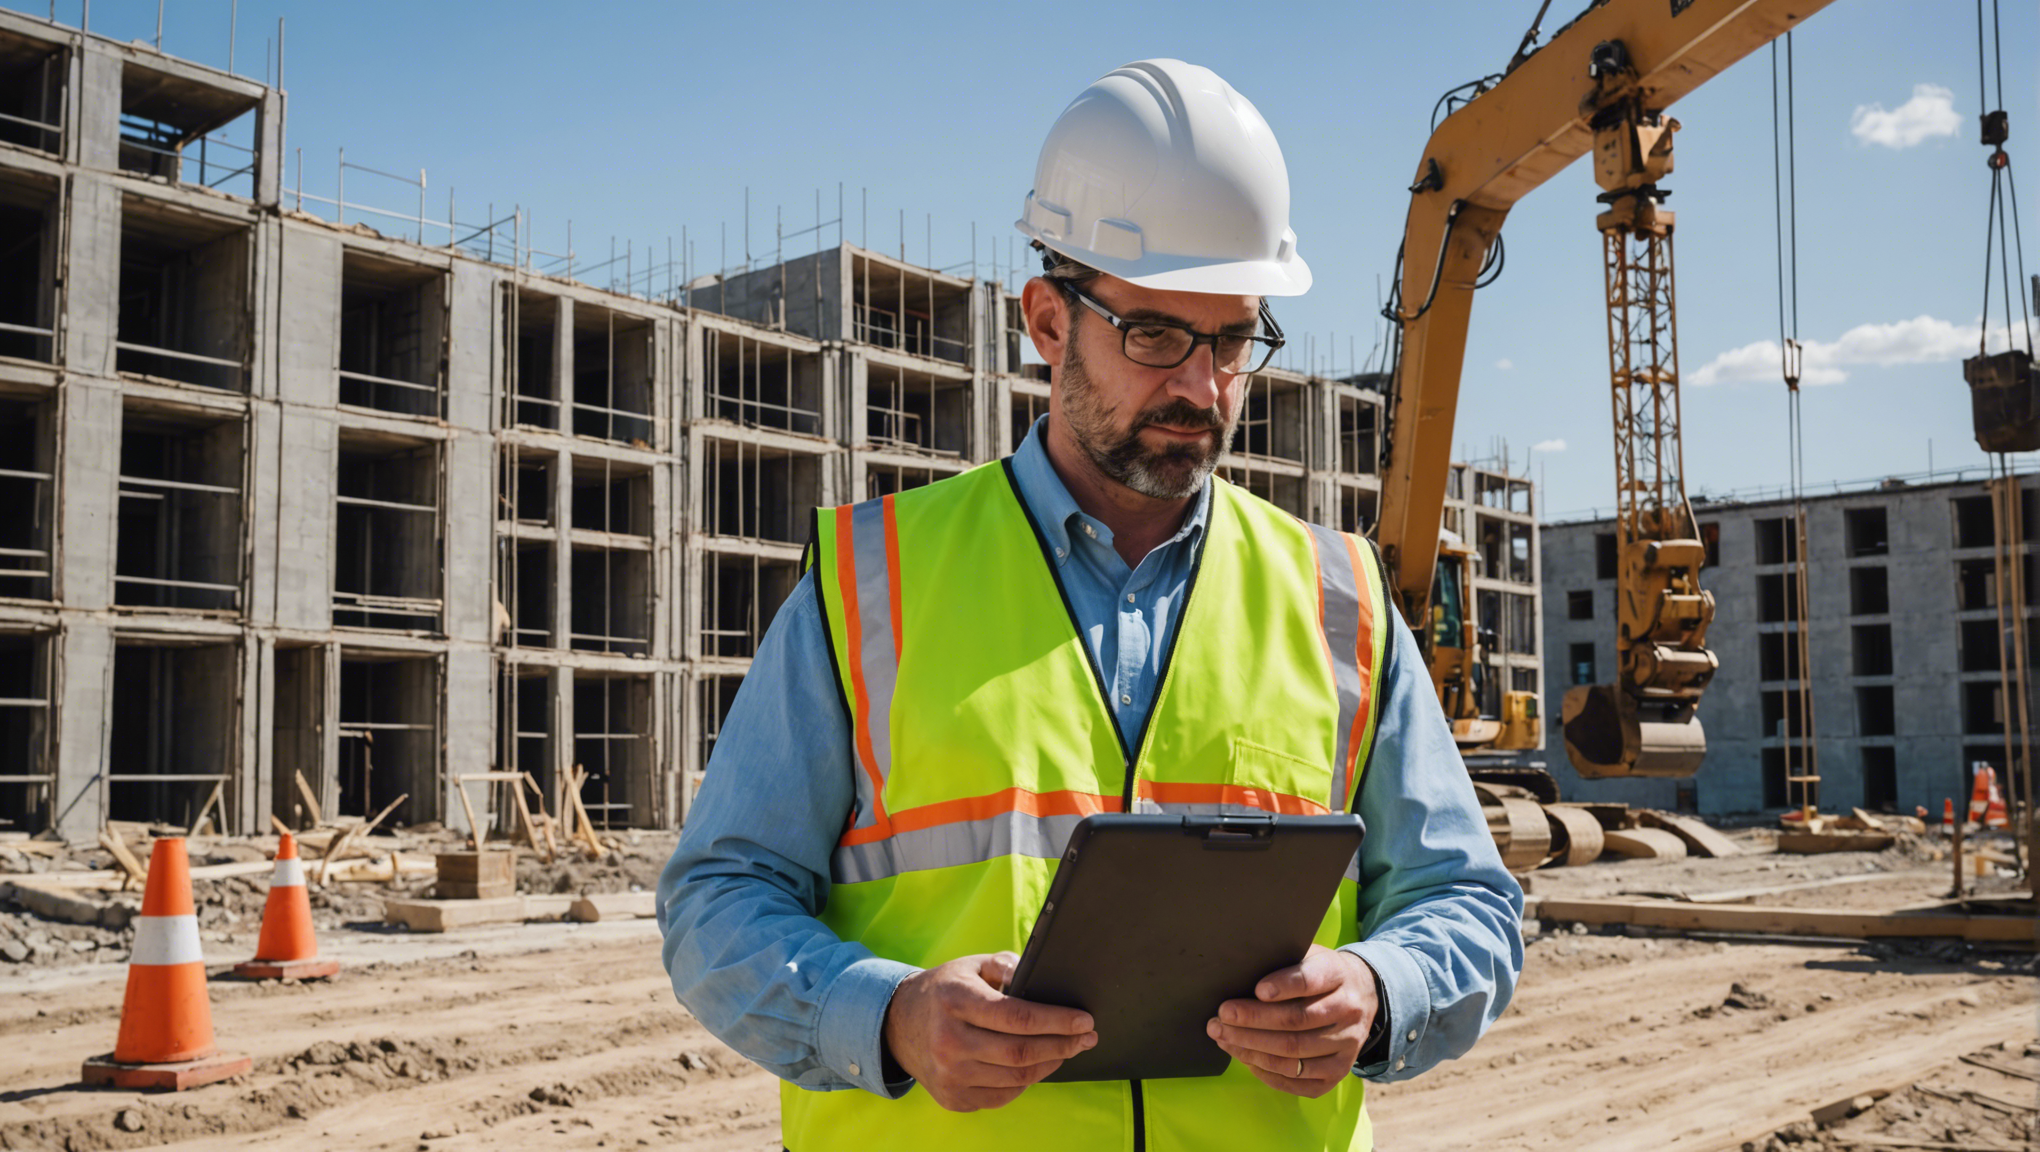 découvrez des conseils pratiques pour l'optimisation de la gestion d'un chantier de construction. réduisez les coûts, améliorez l'efficacité et la sécurité avec nos astuces professionnelles.